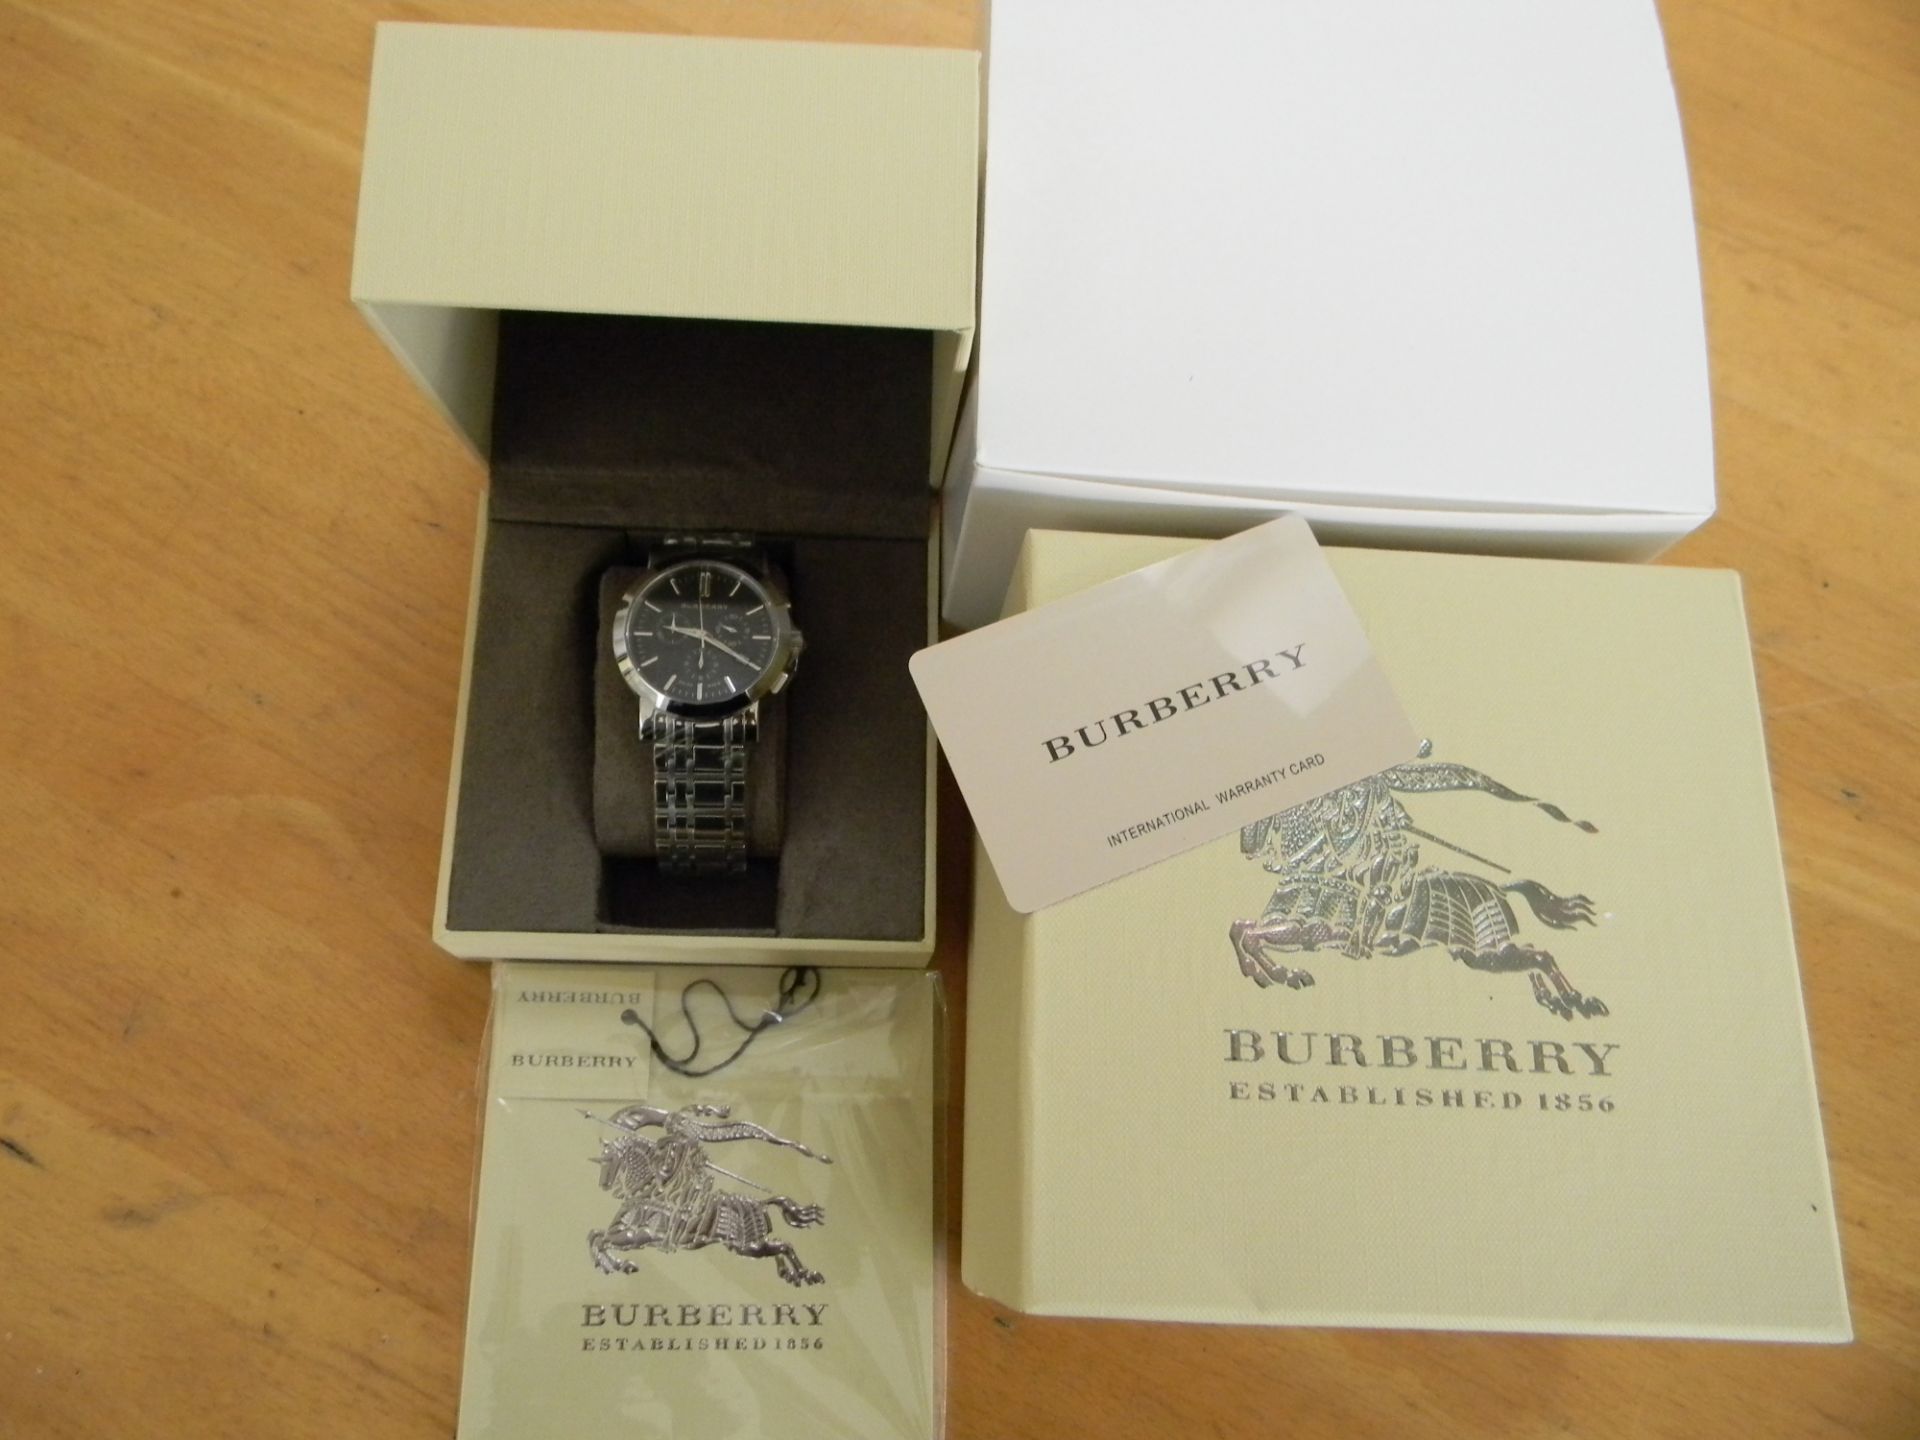 Burberry  BU1360 Men's watch - Image 2 of 3